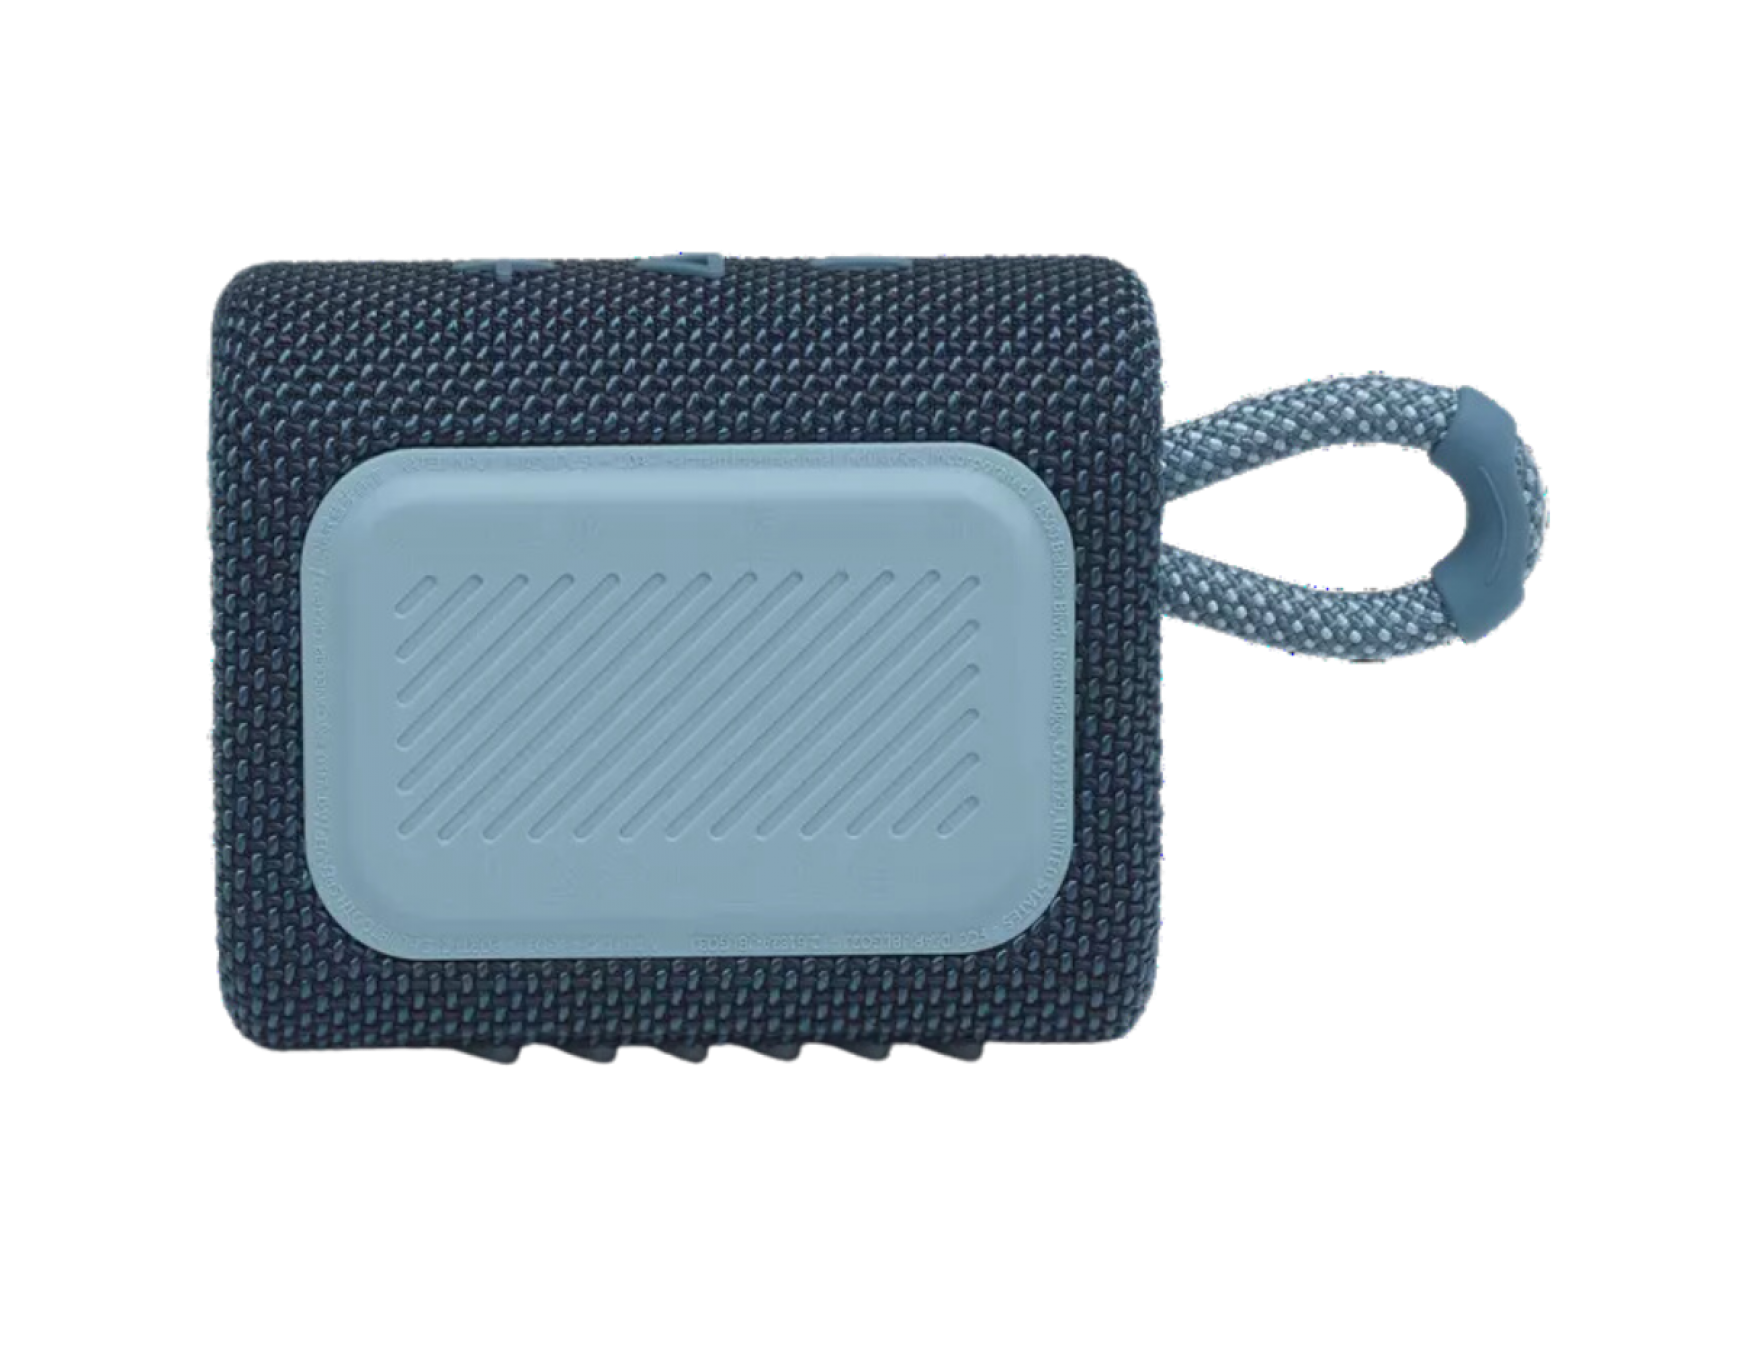 New JBL GO 3 Portable Wireless Bluetooth Waterproof Speaker Blue